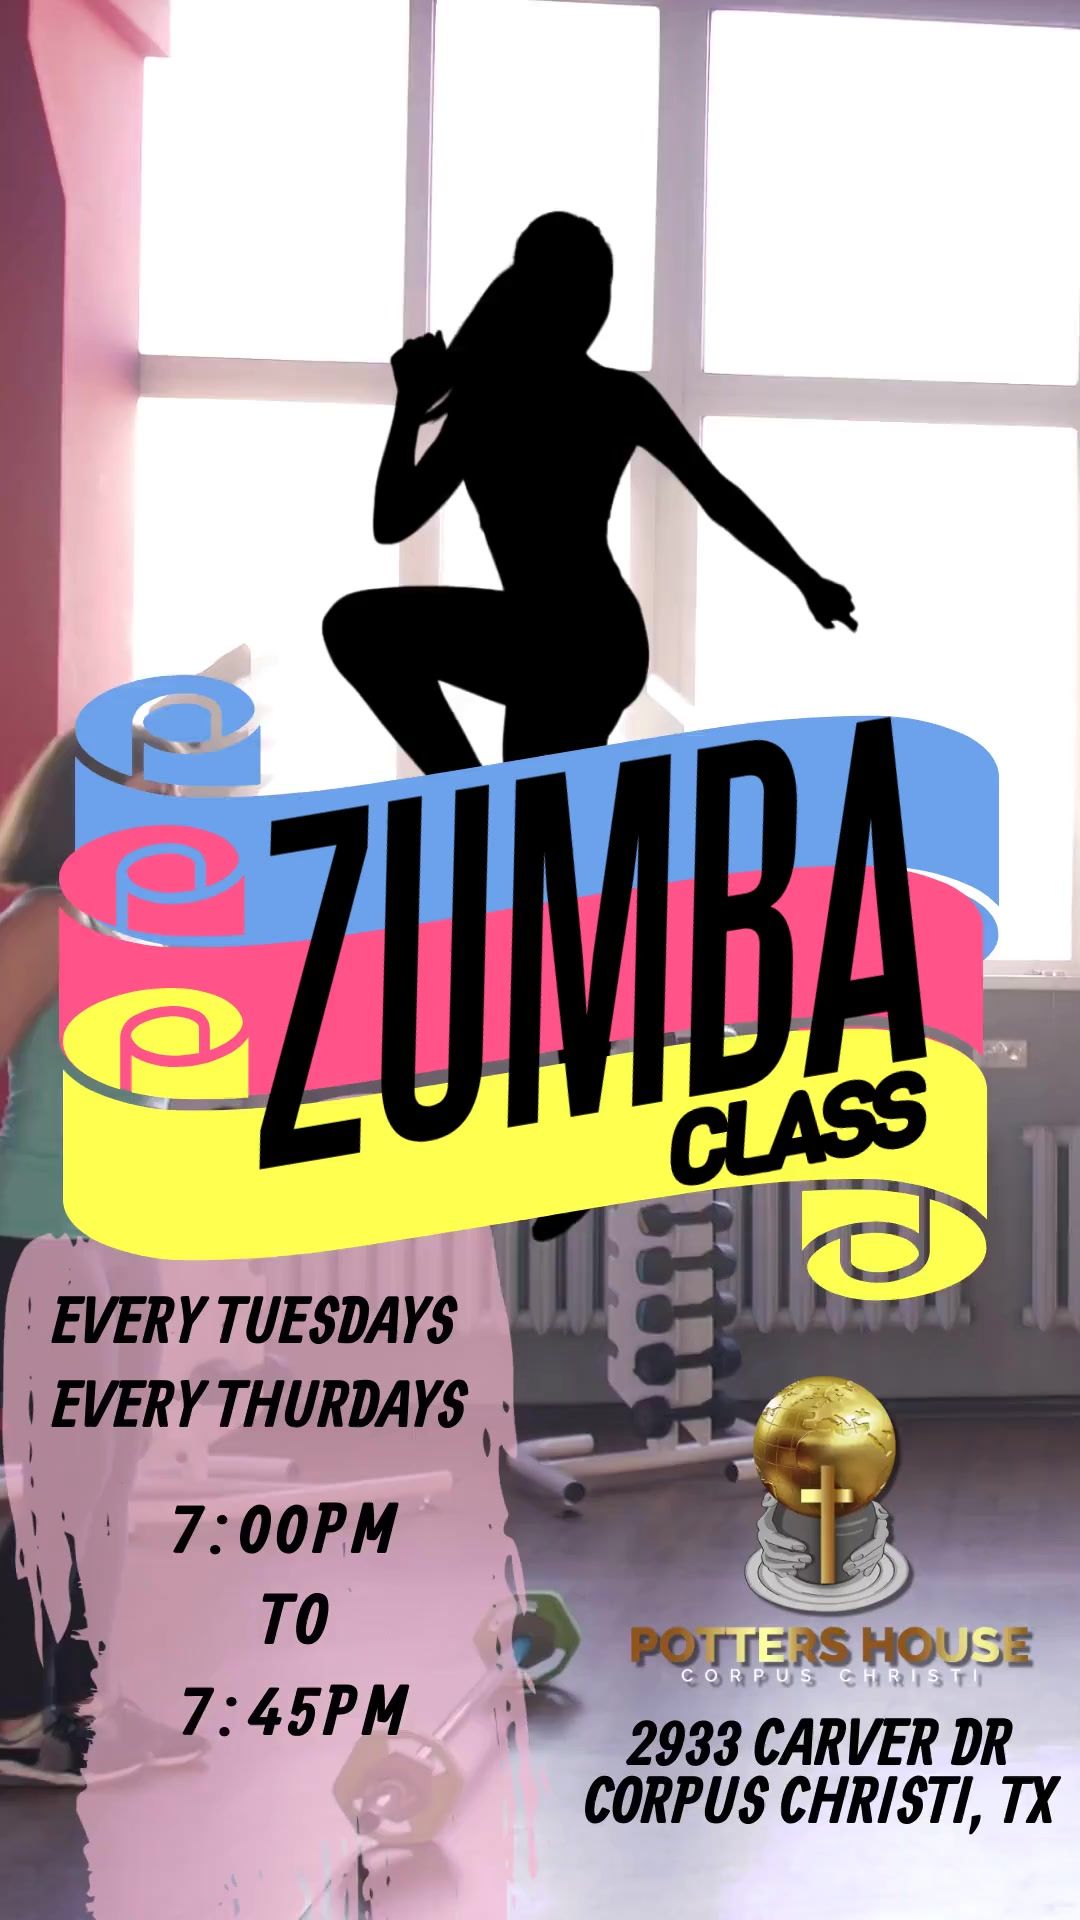 Zumba Tuesdays and Thursdays